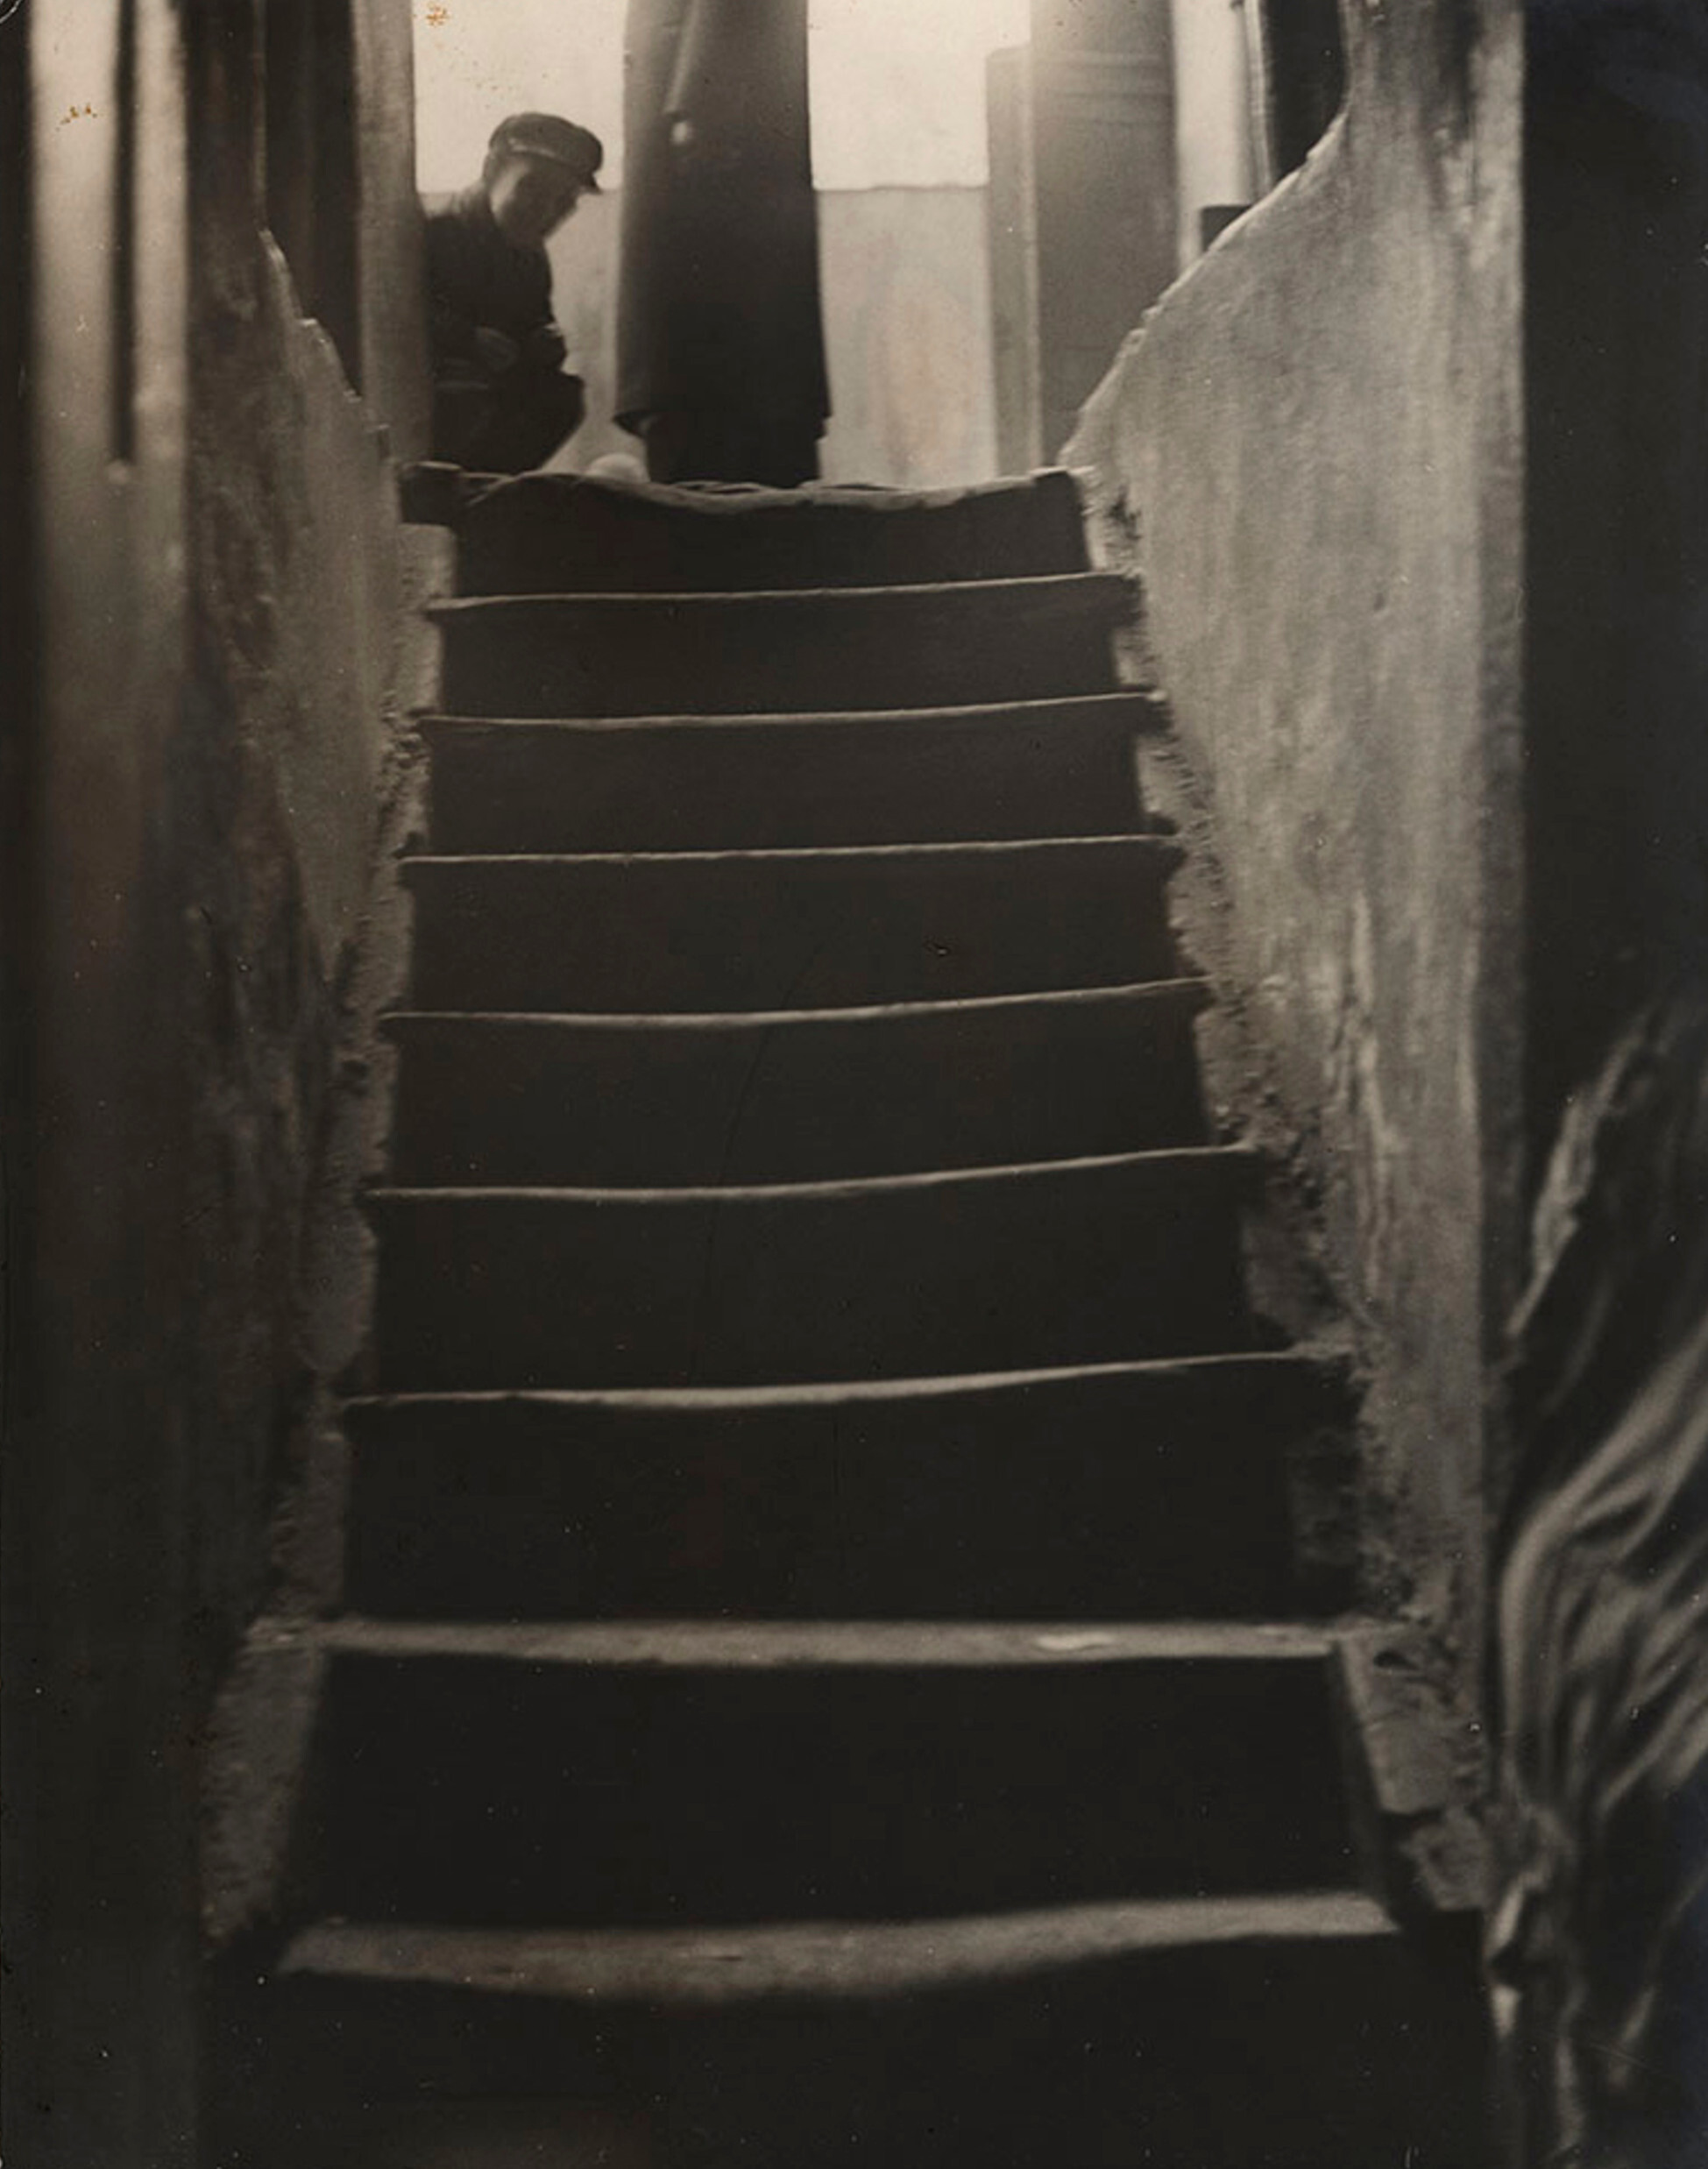 Выход из сети многоквартирных подвальных домов, улица Крохмальная, Варшава, ок. 1935-38 гг. Фотограф Роман Вишняк